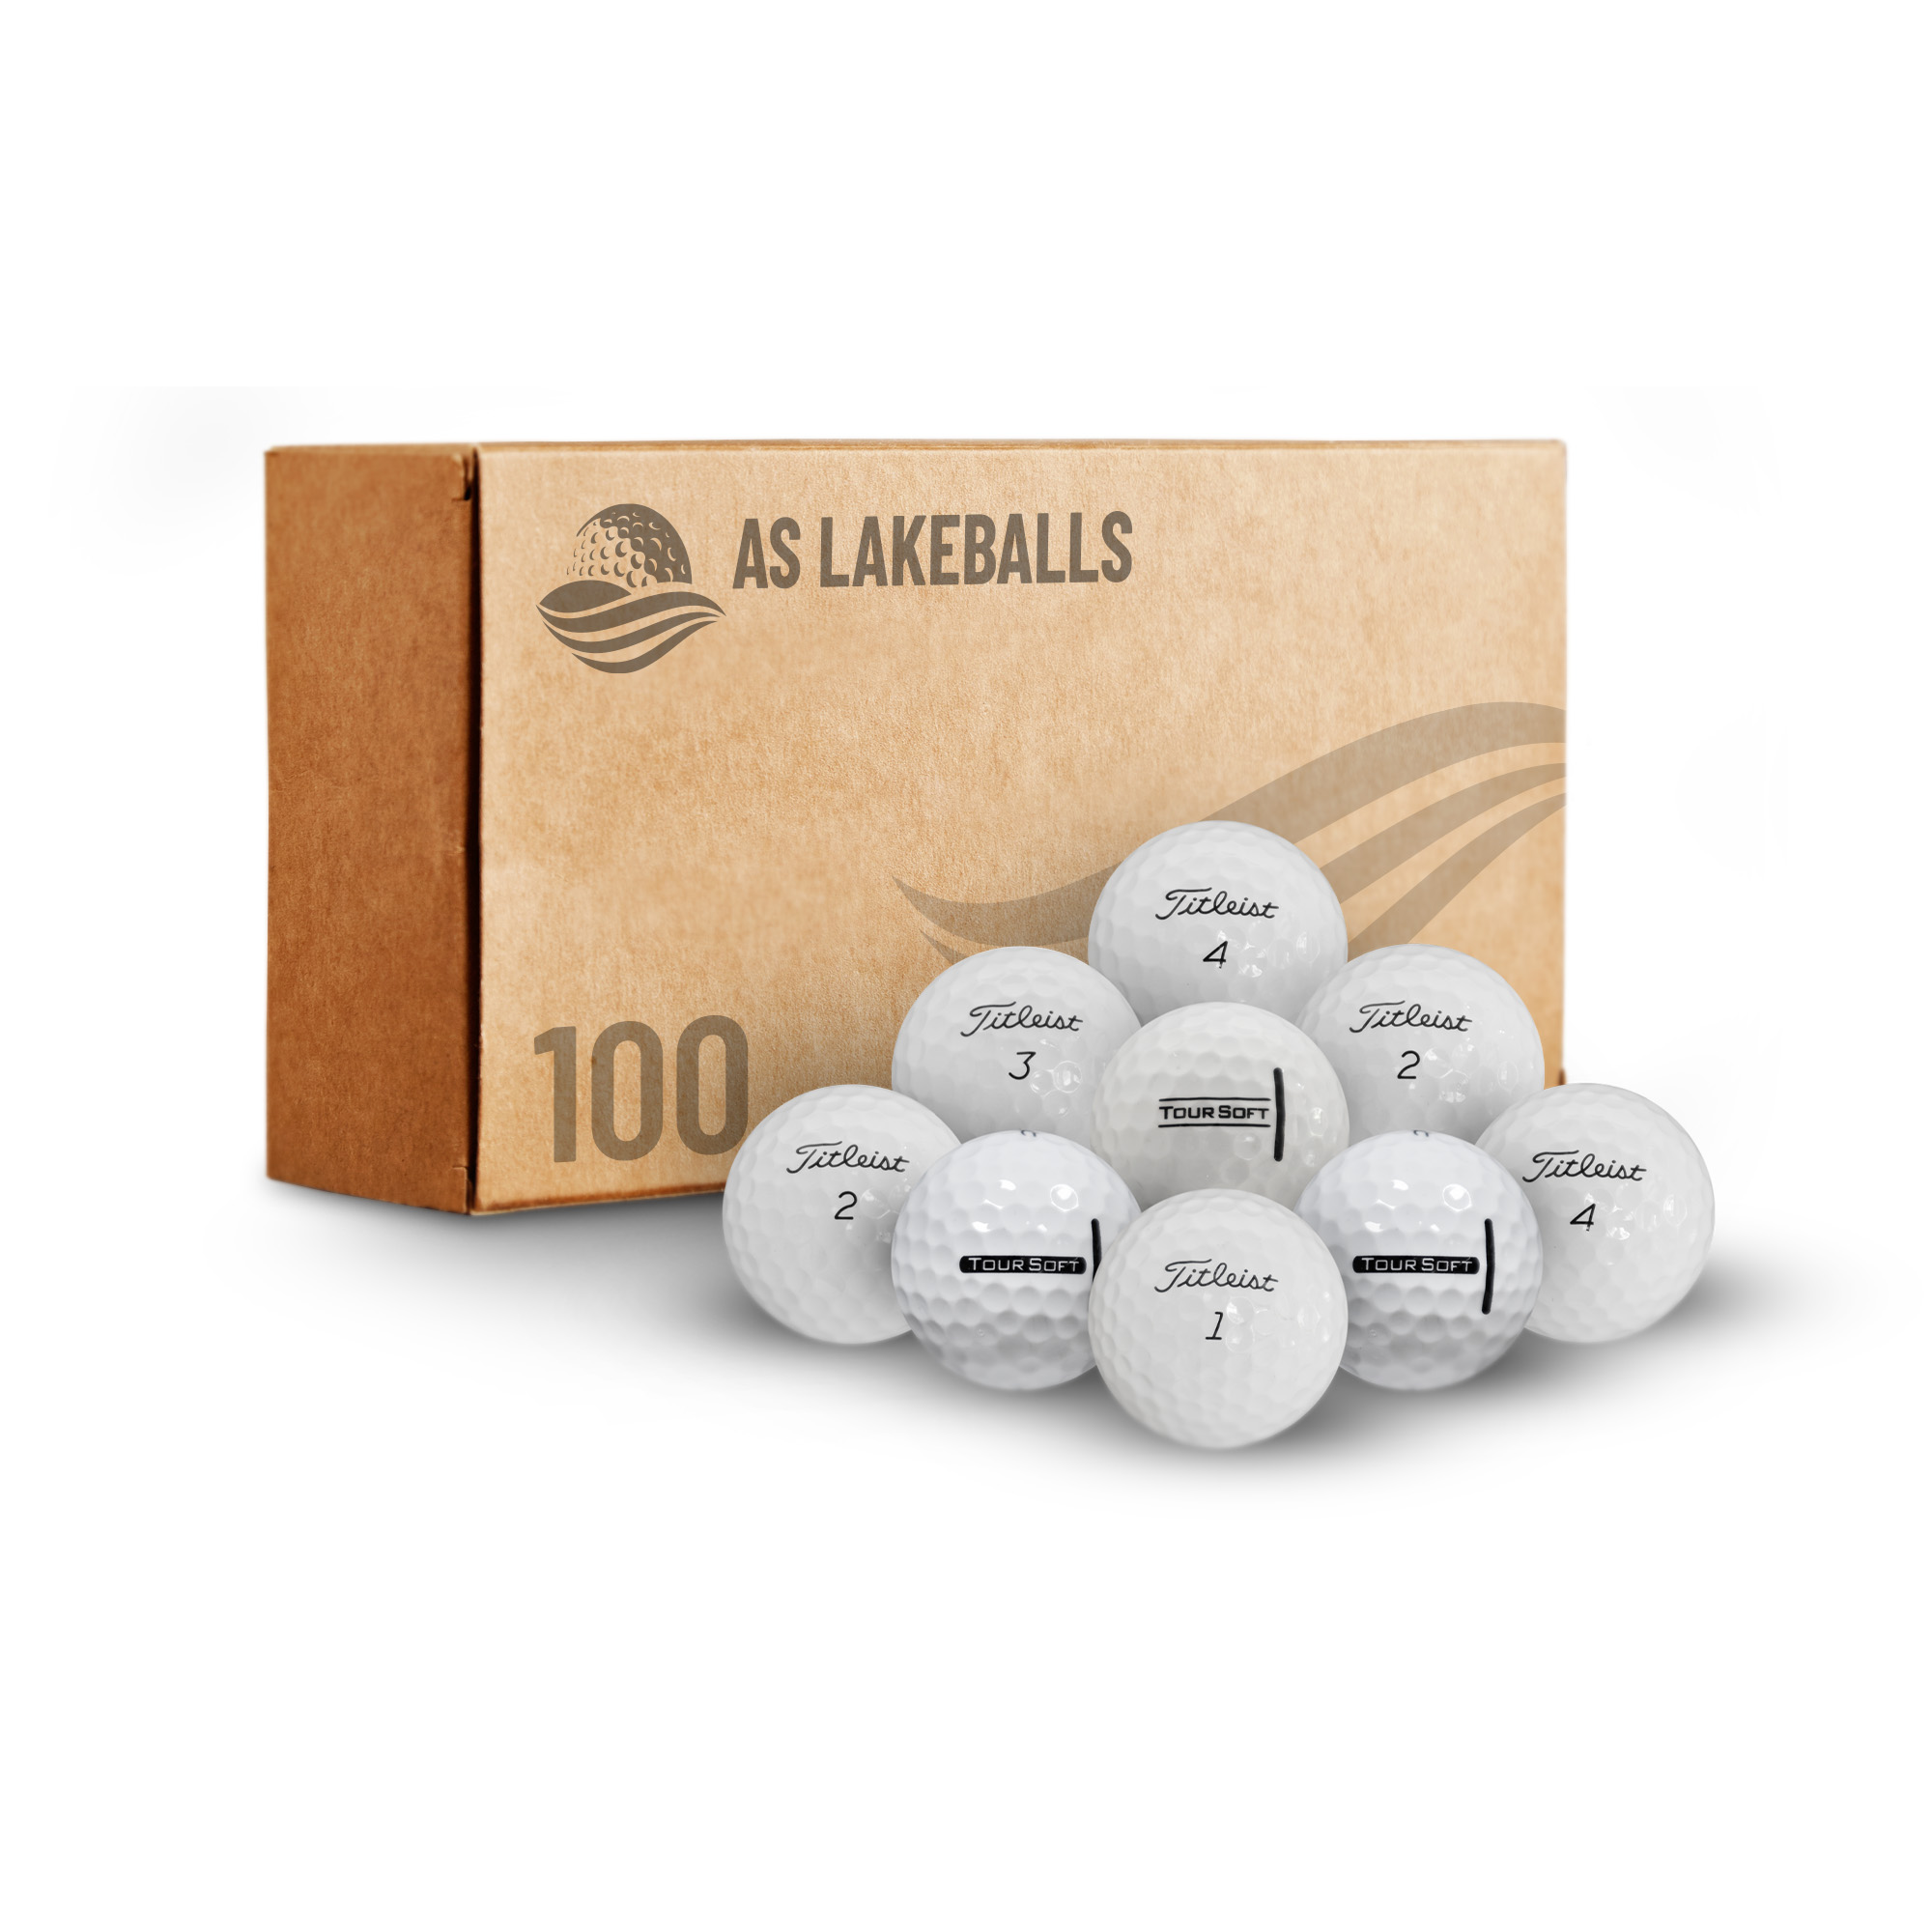 100 Titleist Tour Soft AAA-AA bei AS Lakeballs günstig kaufen